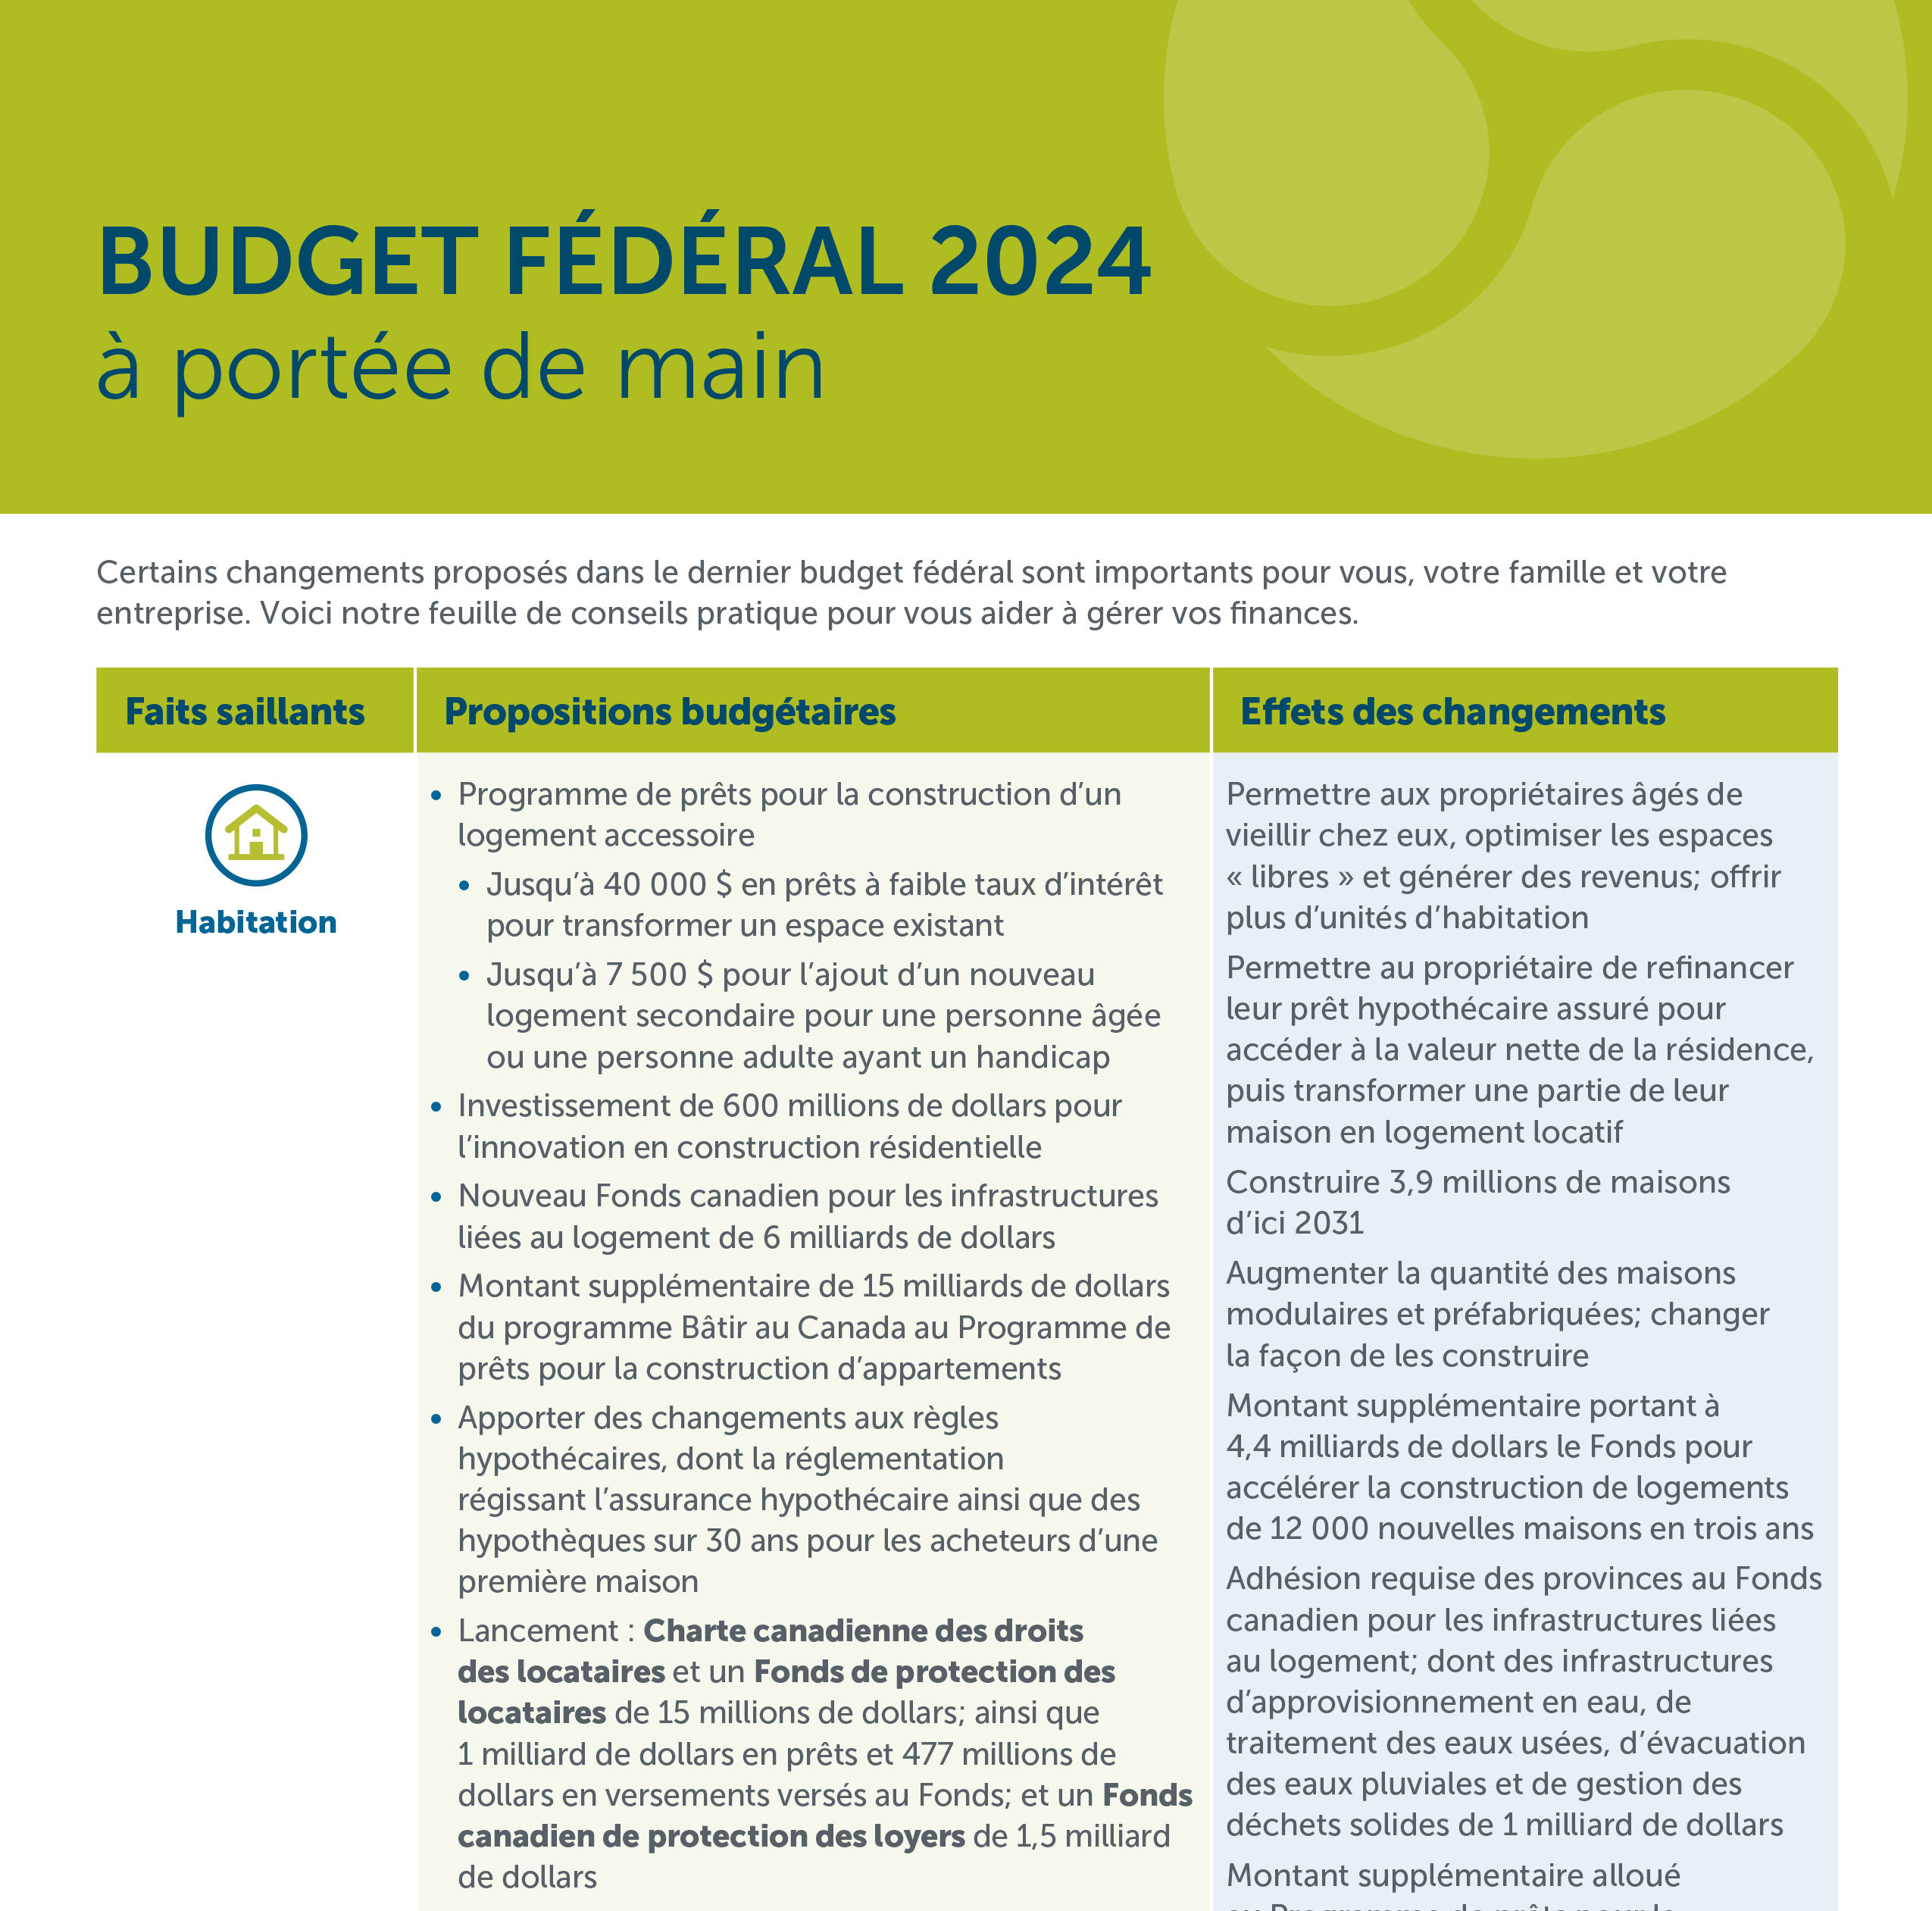 Budget fédéral 2024 à portée de main